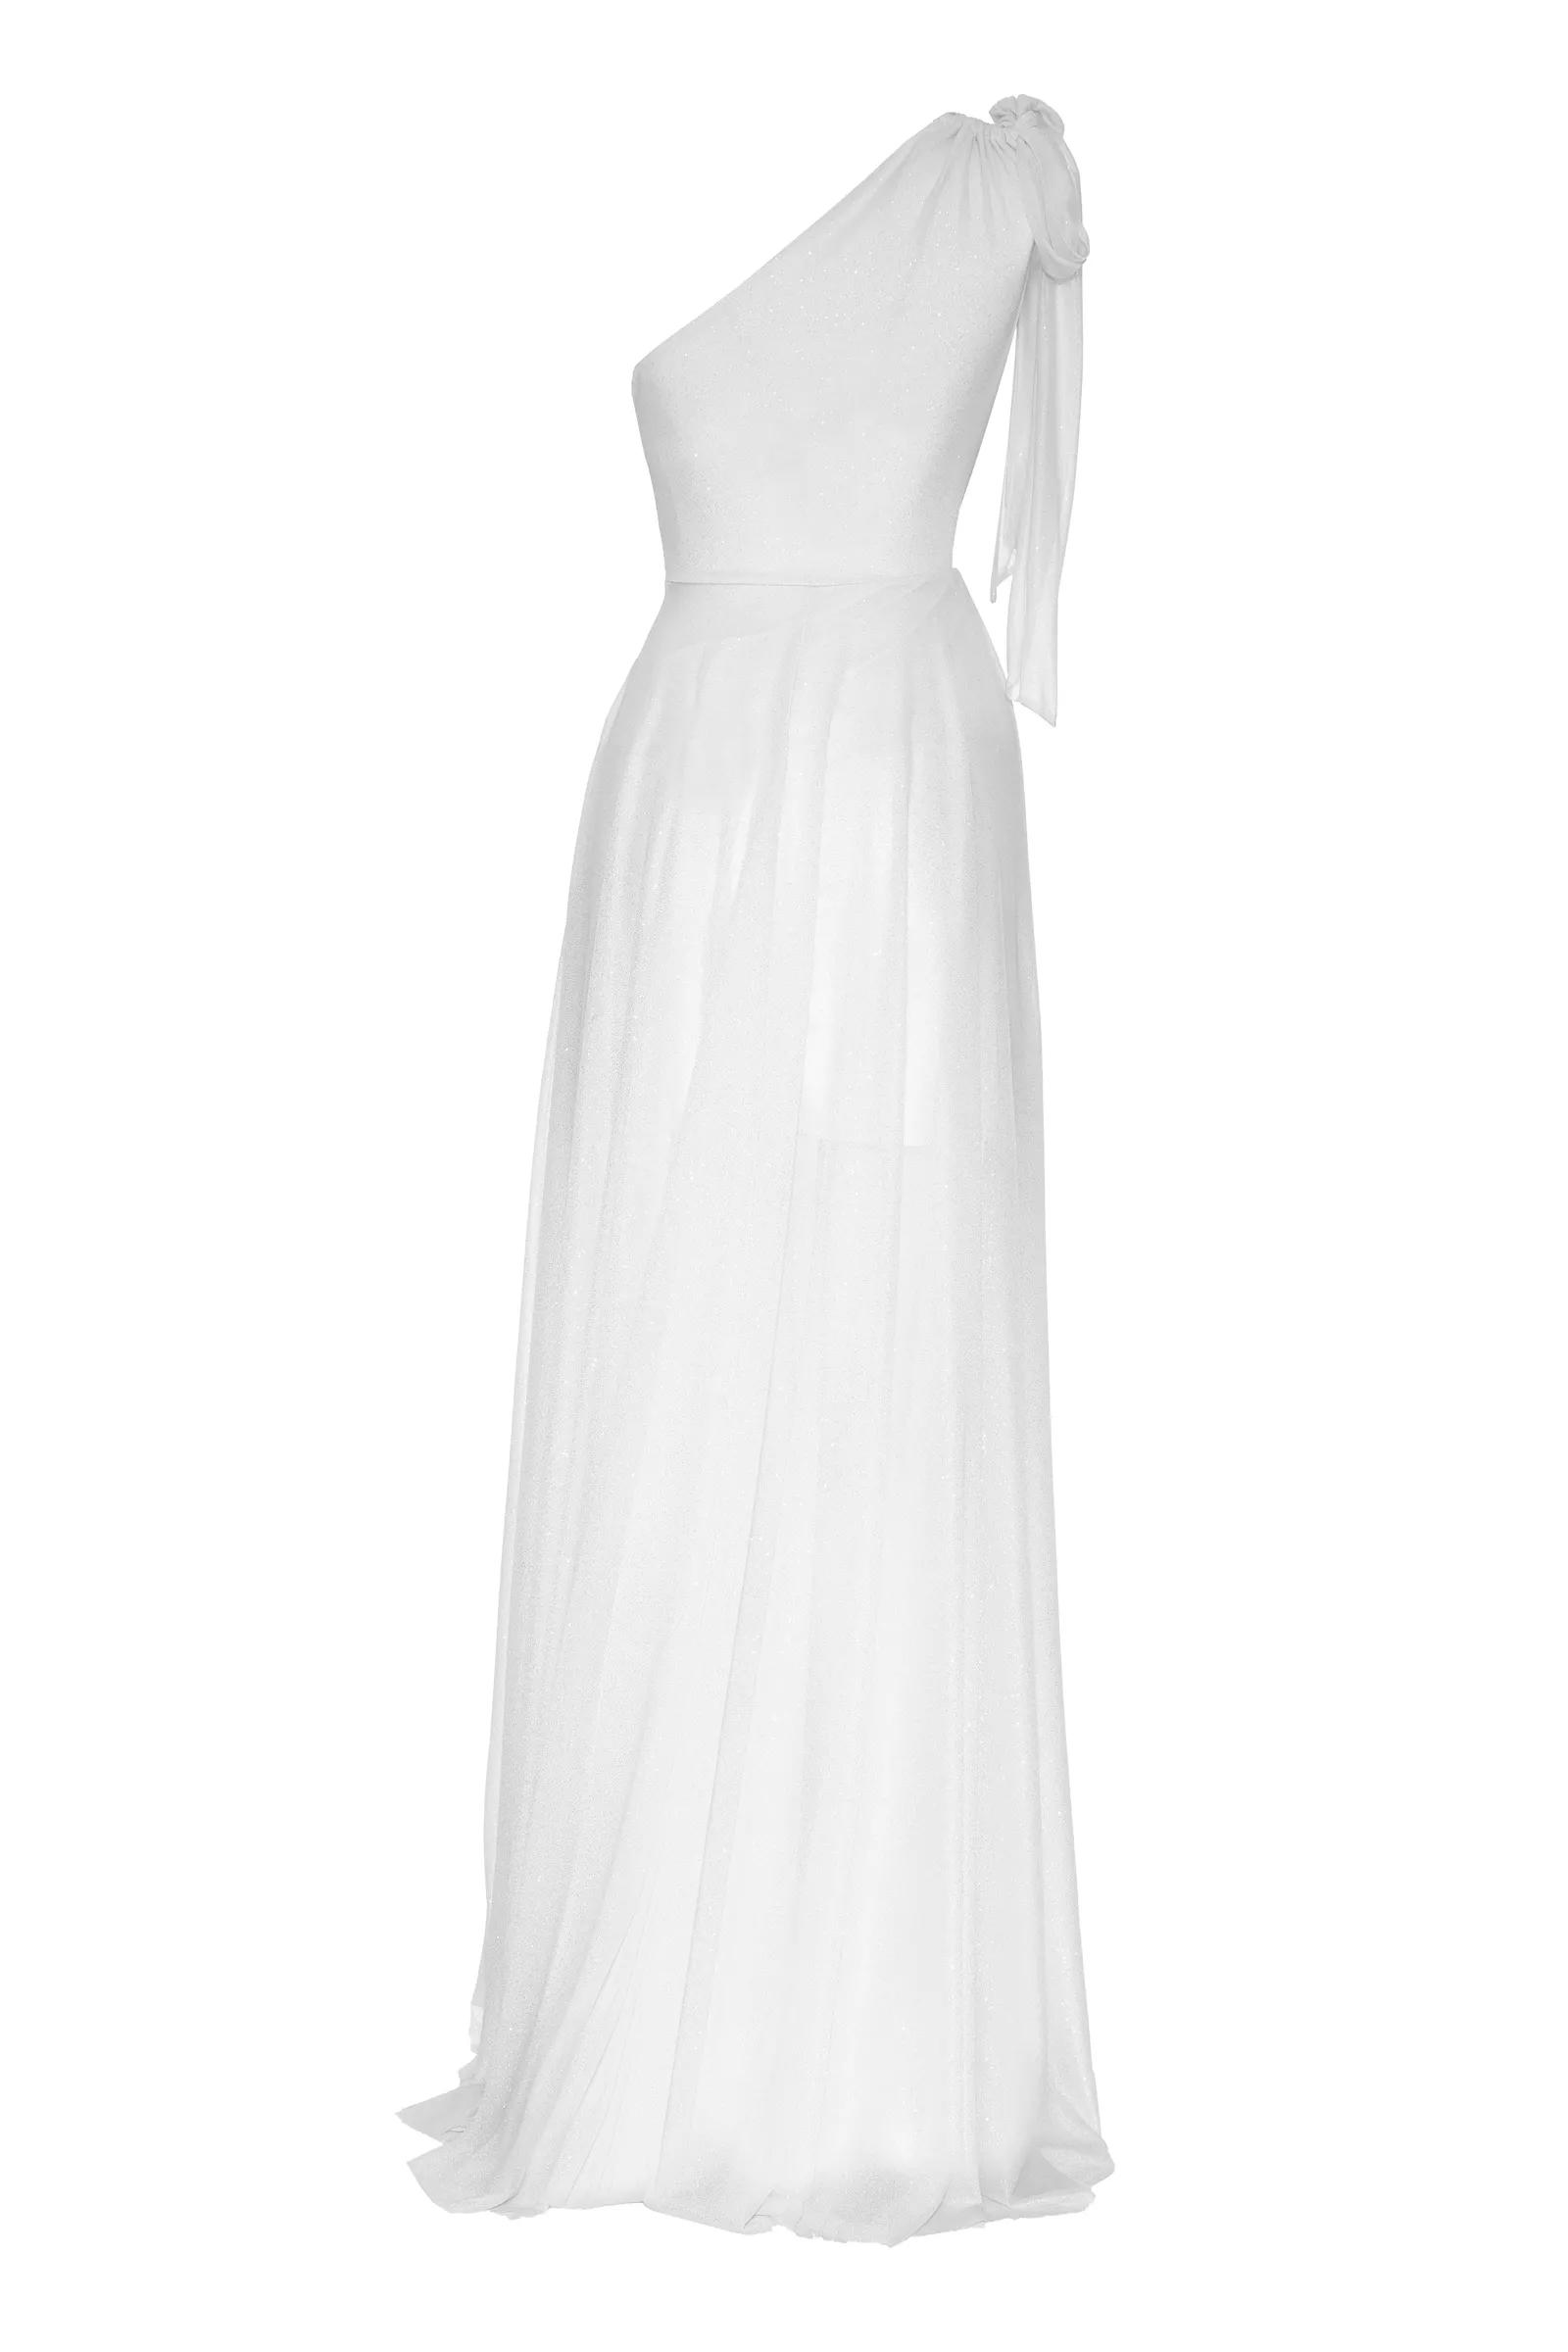 White tulle one arm maxi dress